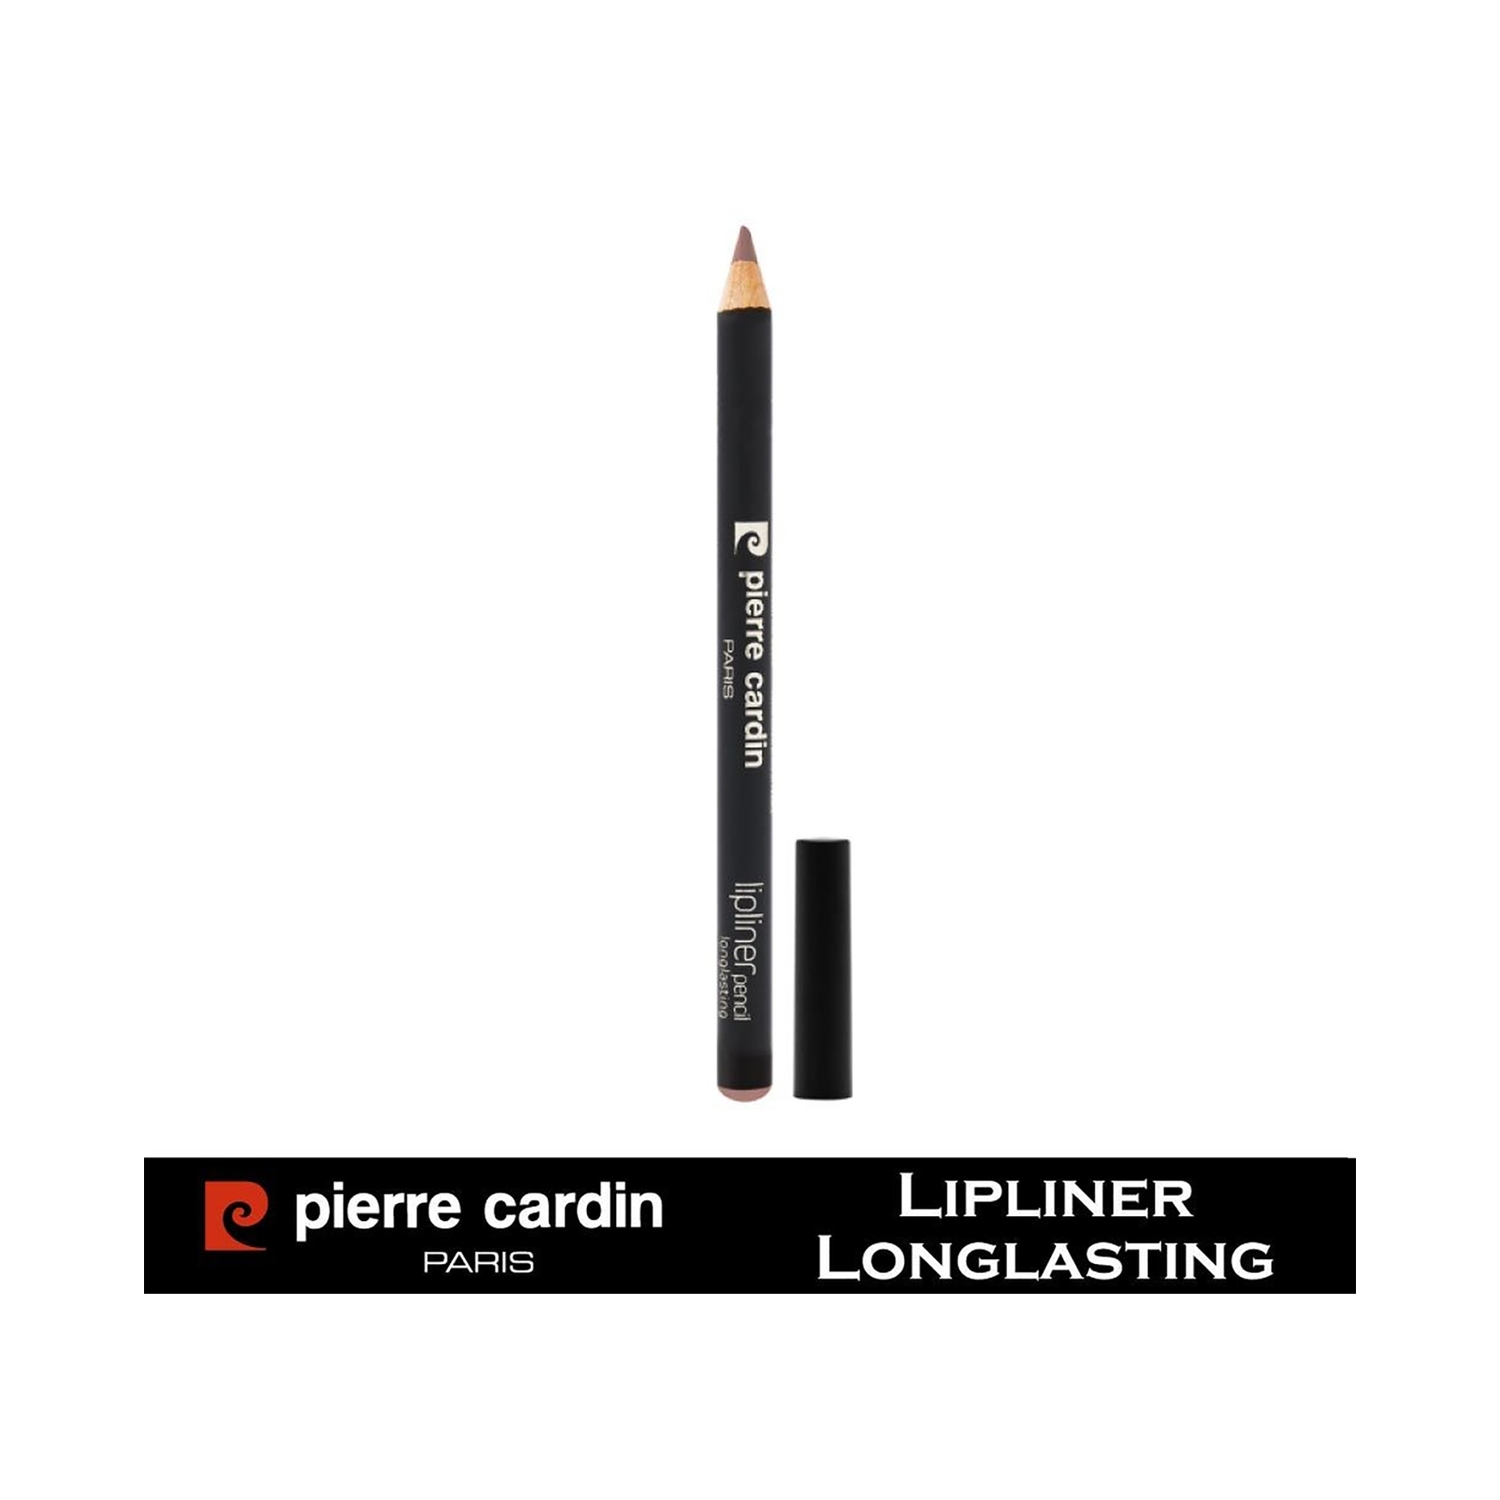 Pierre Cardin Paris | Pierre Cardin Paris Longlasting Lip Liner Pencil - 585 Natural (0.4g)